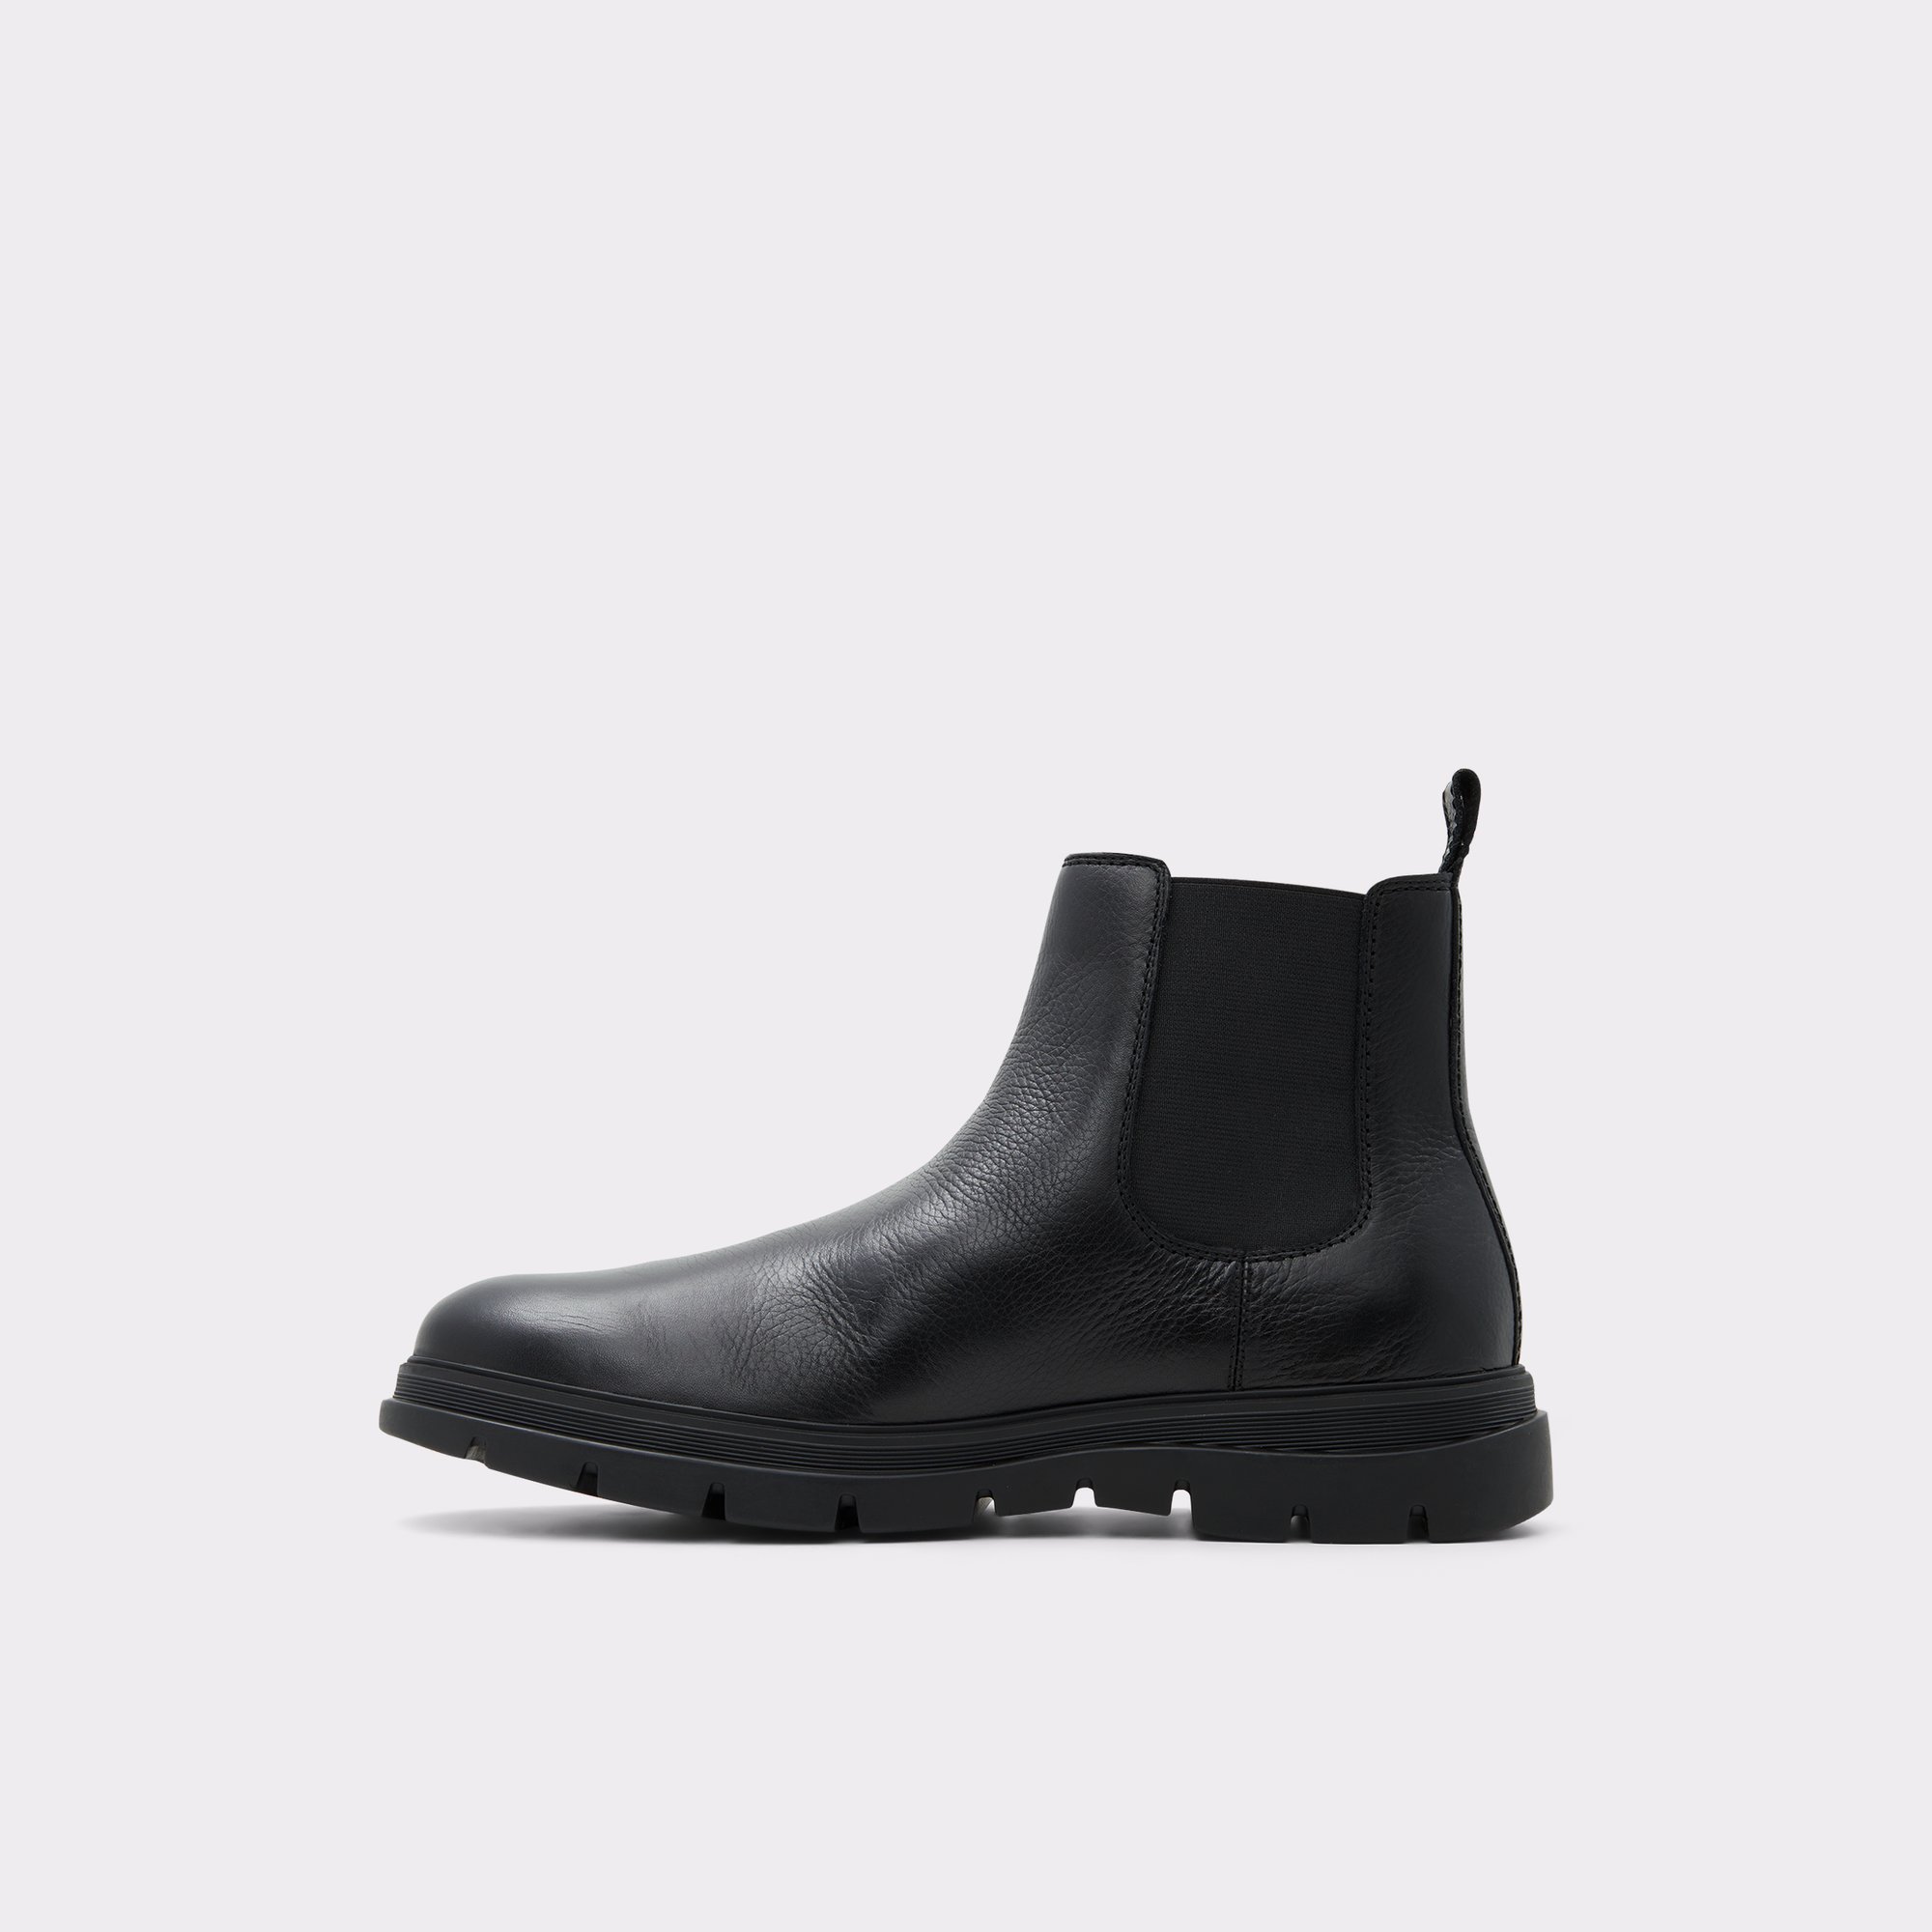 nuttet han vandfald Weannon Black Leather Pebble Men's Chelsea Boots | ALDO US